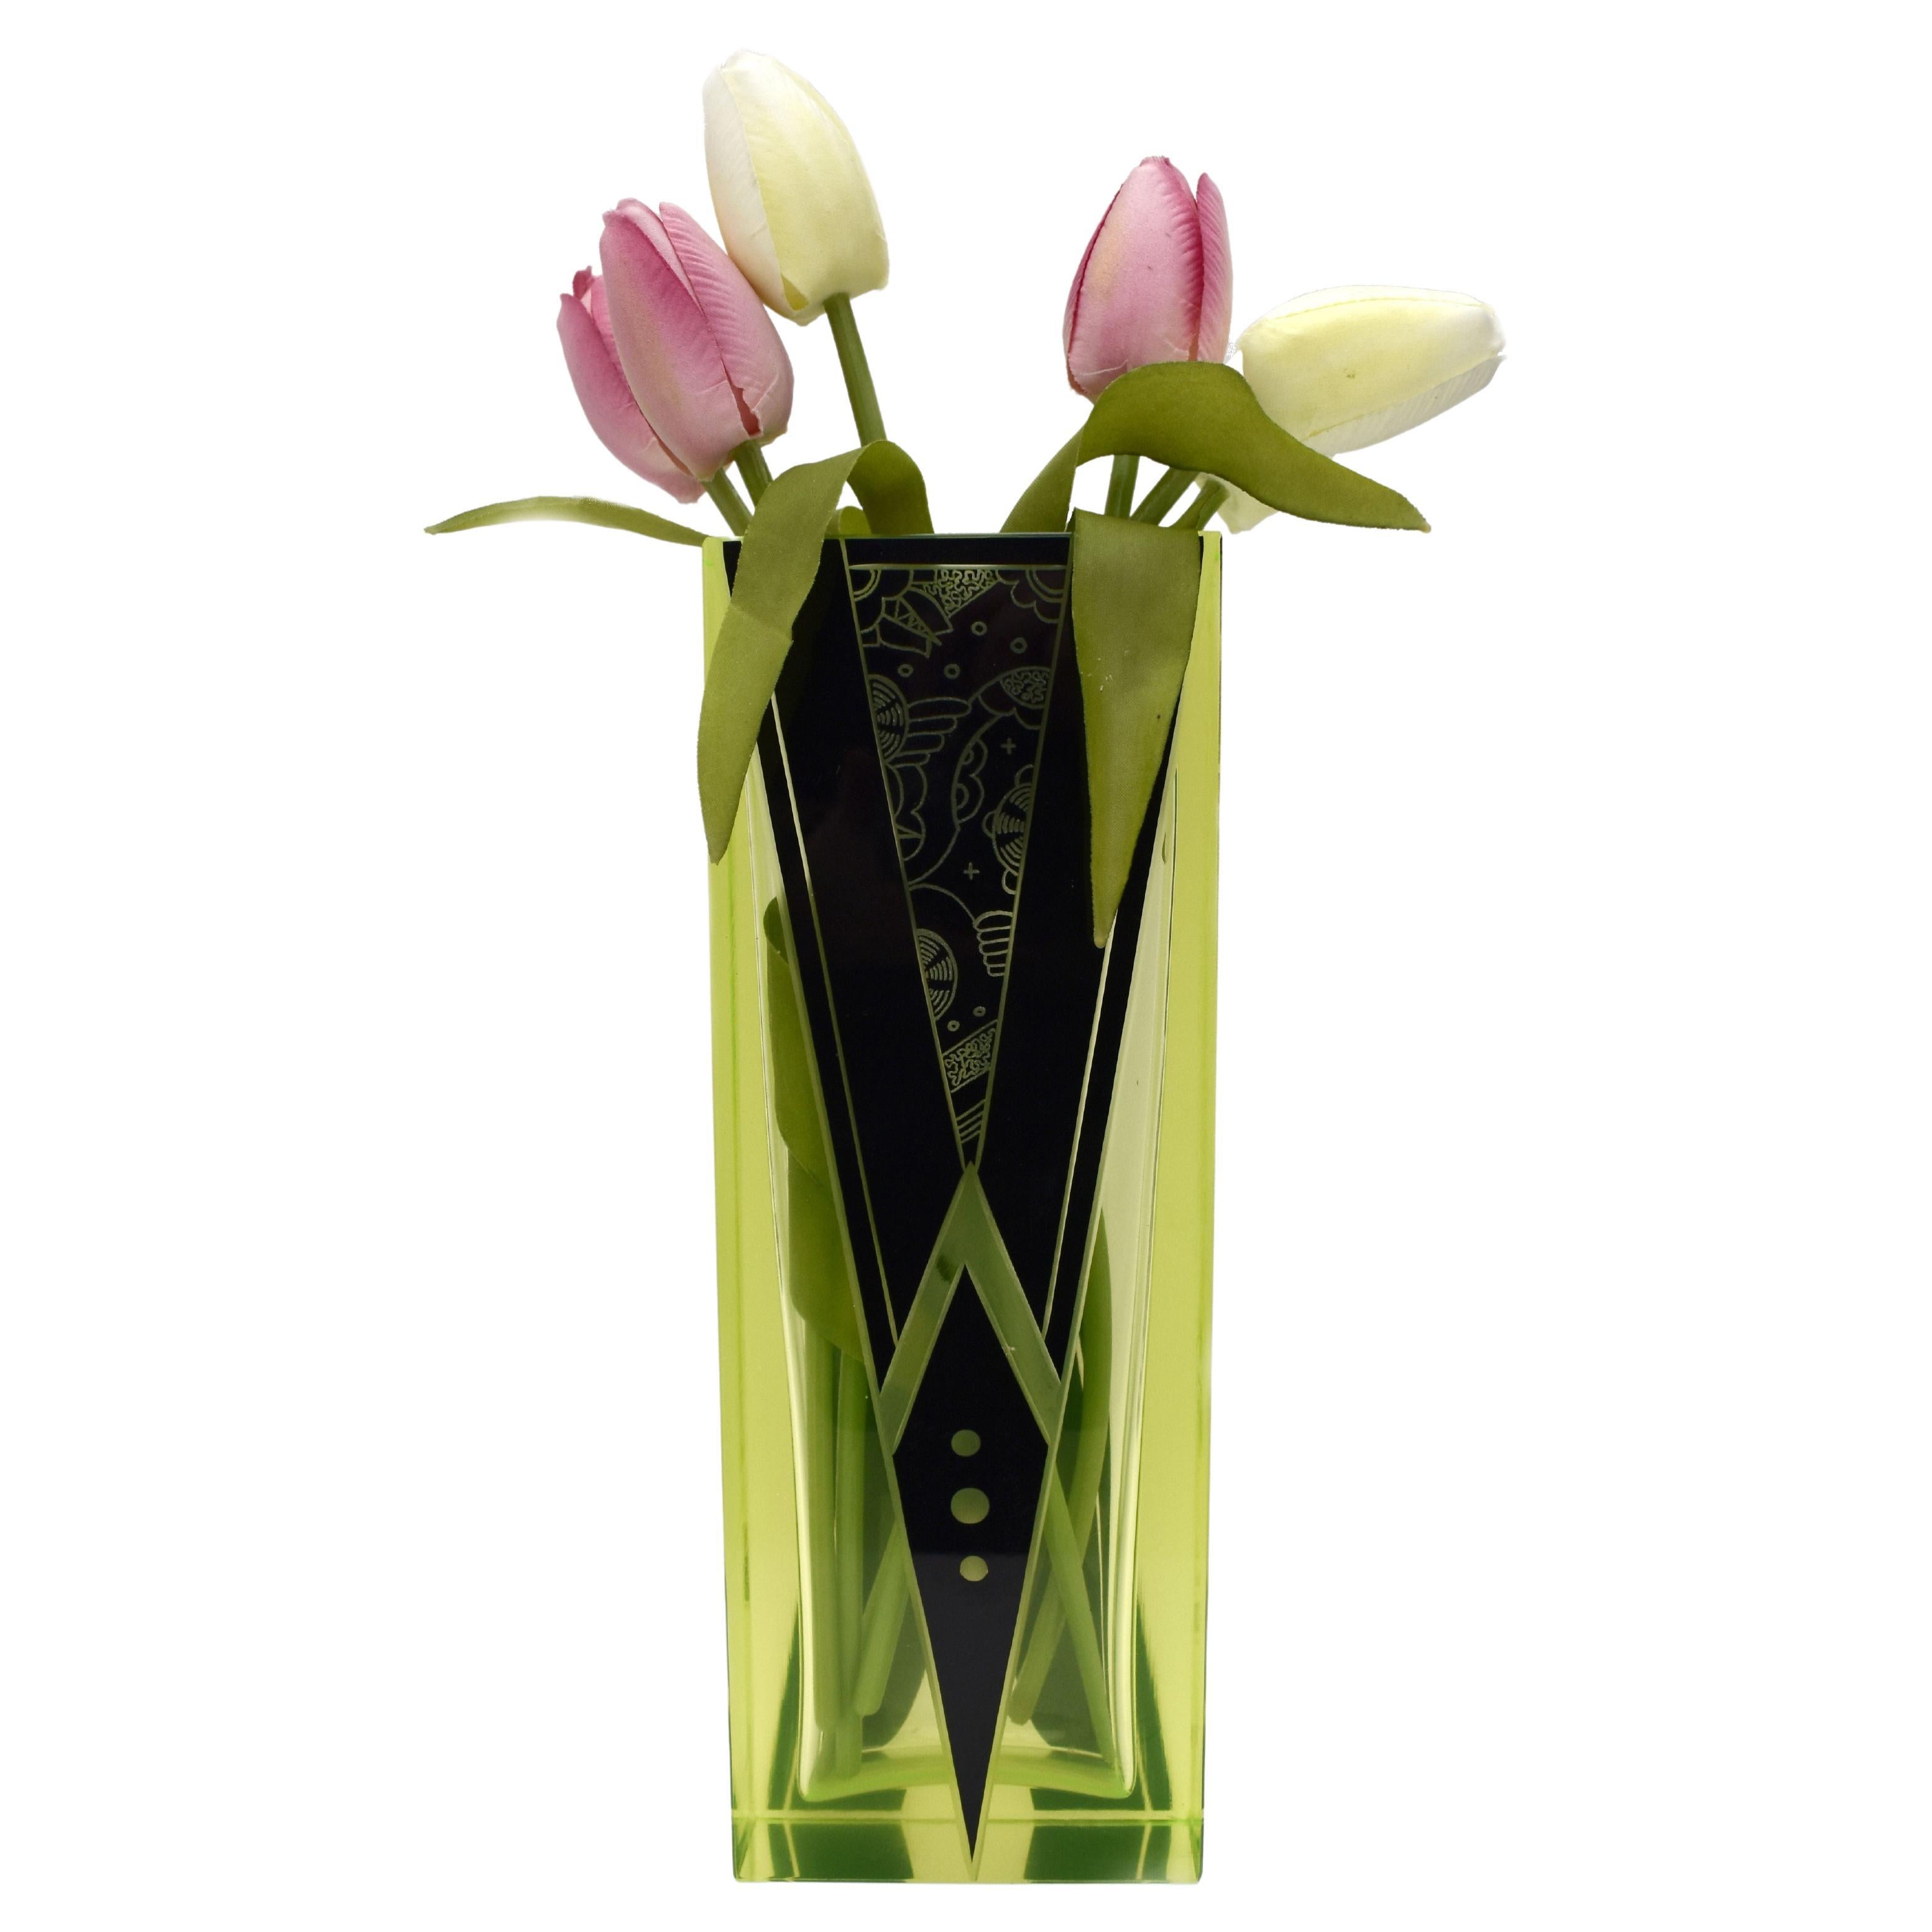 Uraniumglas- und Emaille-Vase im Art déco-Stil von Karl Palda, um 1930